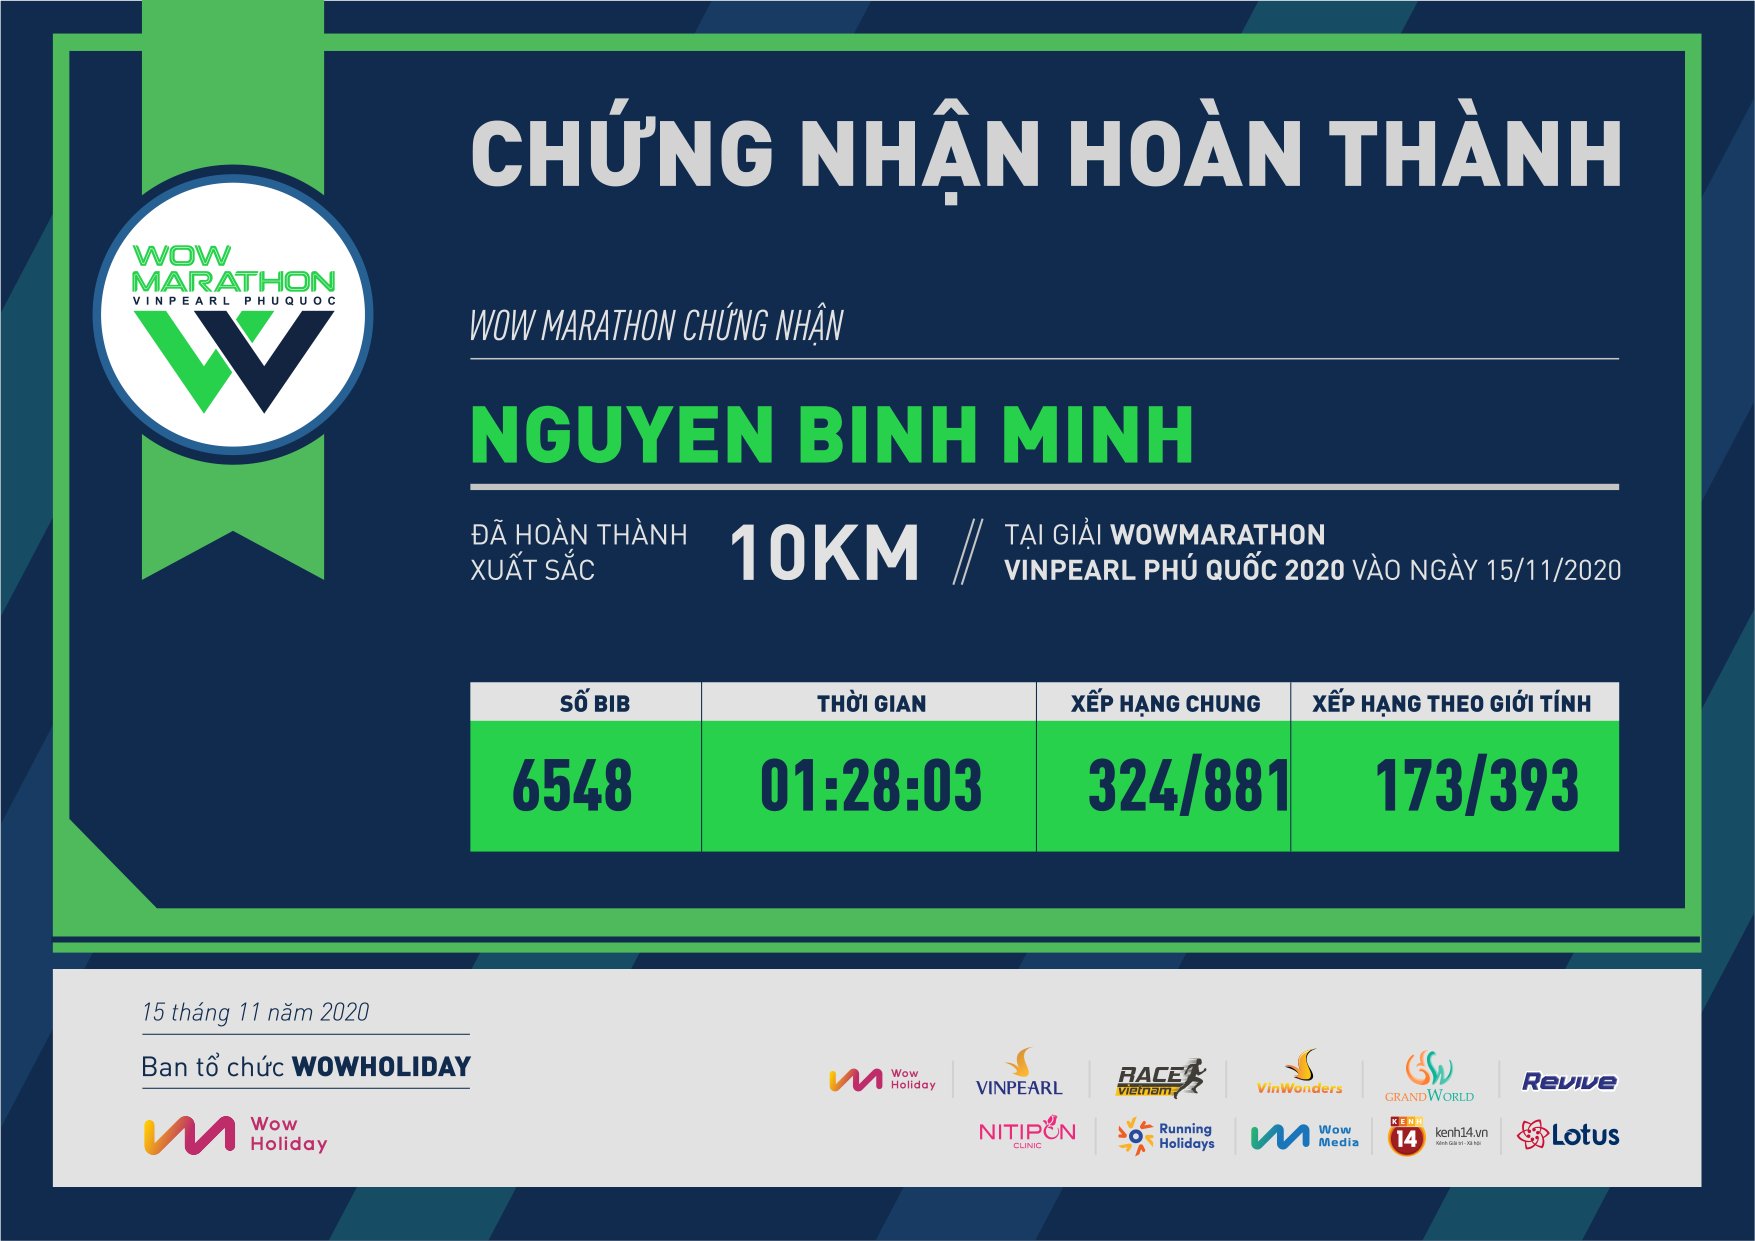 6548 - Nguyen Binh Minh